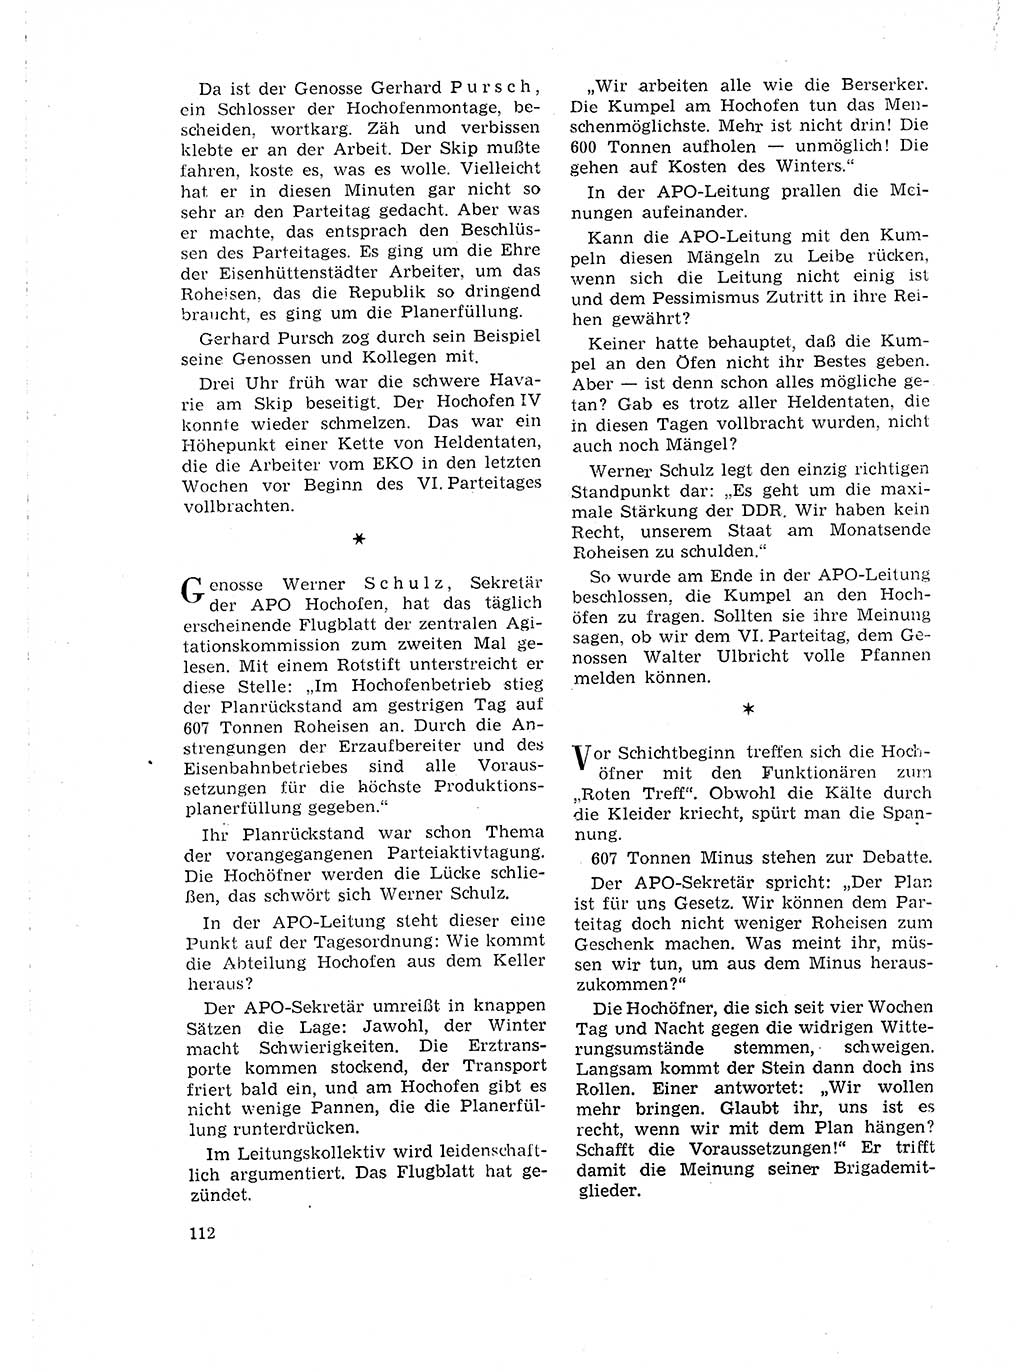 Neuer Weg (NW), Organ des Zentralkomitees (ZK) der SED (Sozialistische Einheitspartei Deutschlands) für Fragen des Parteilebens, 18. Jahrgang [Deutsche Demokratische Republik (DDR)] 1963, Seite 112 (NW ZK SED DDR 1963, S. 112)